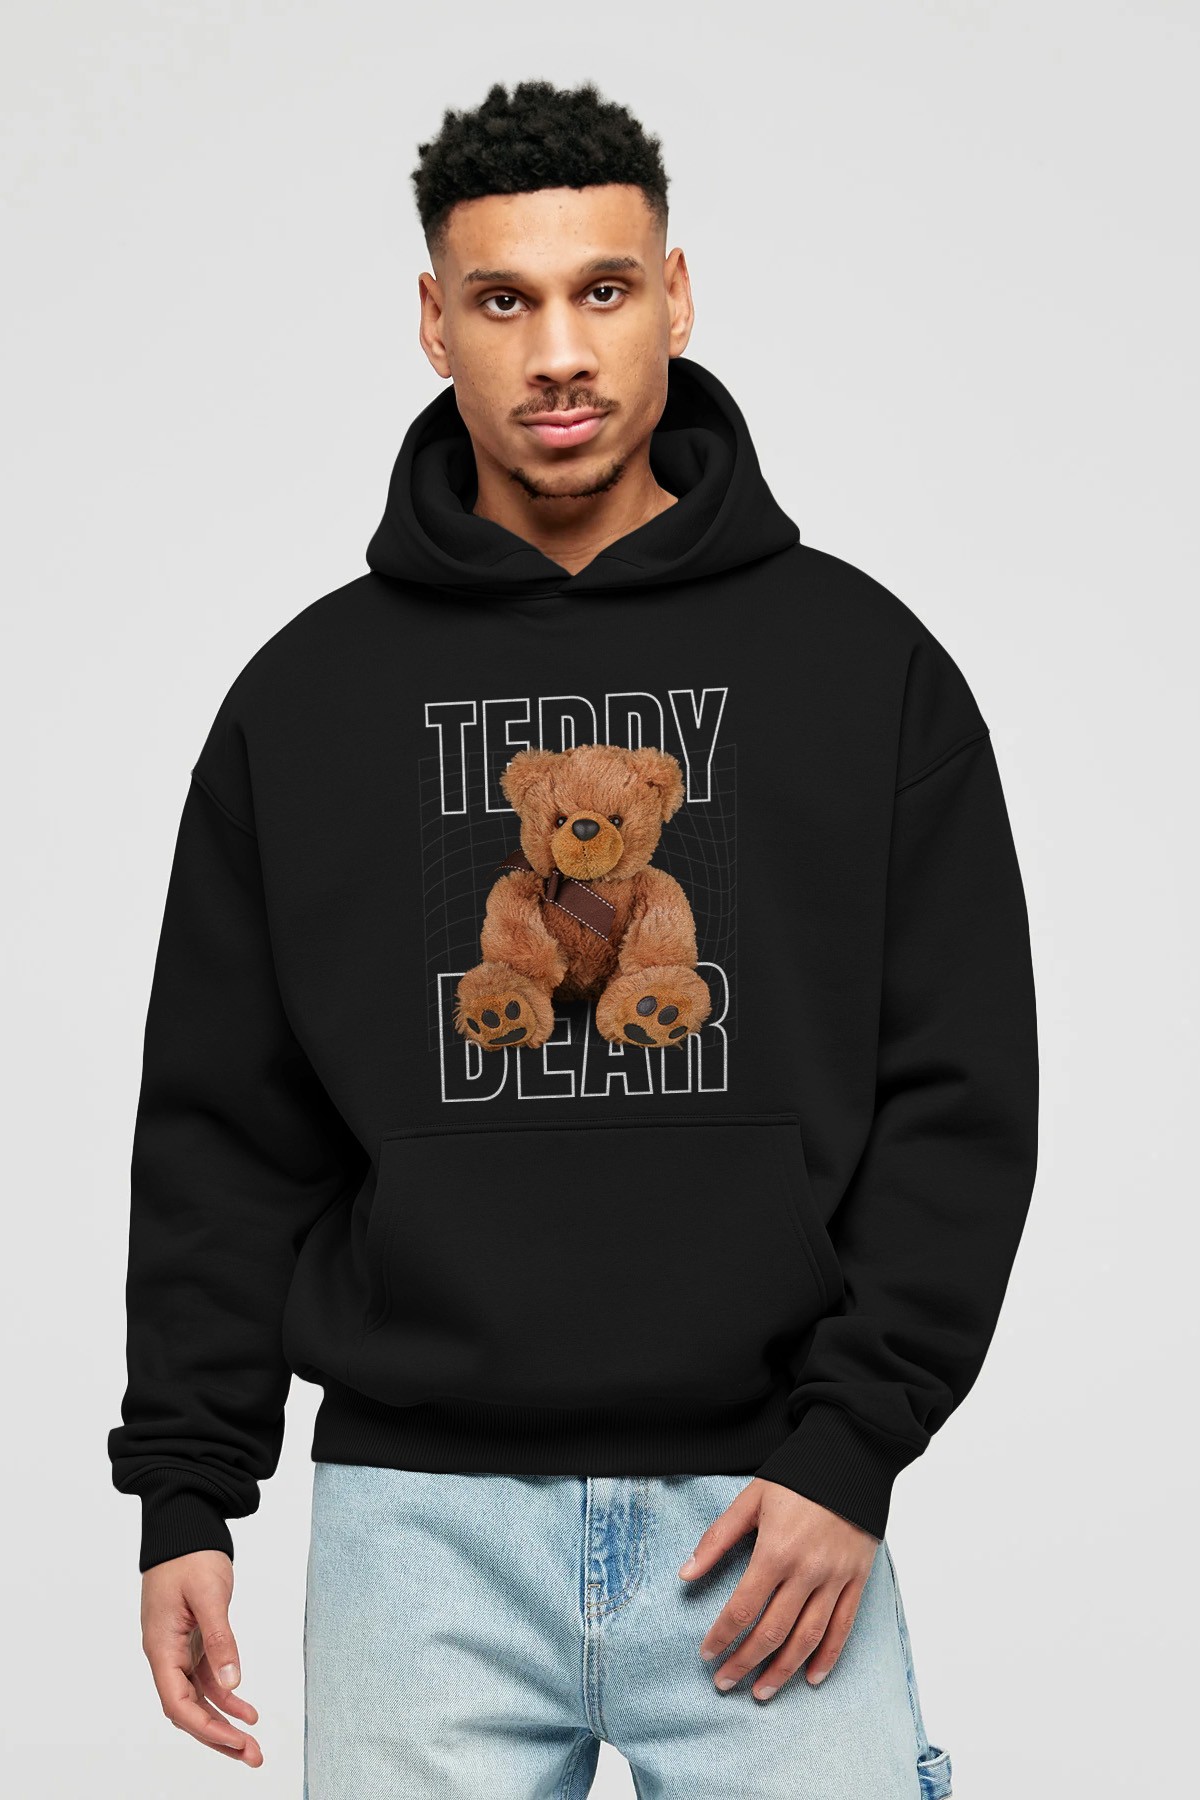 Teddy Bear Yazılı Ön Baskılı Hoodie Oversize Kapüşonlu Sweatshirt Erkek Kadın Unisex